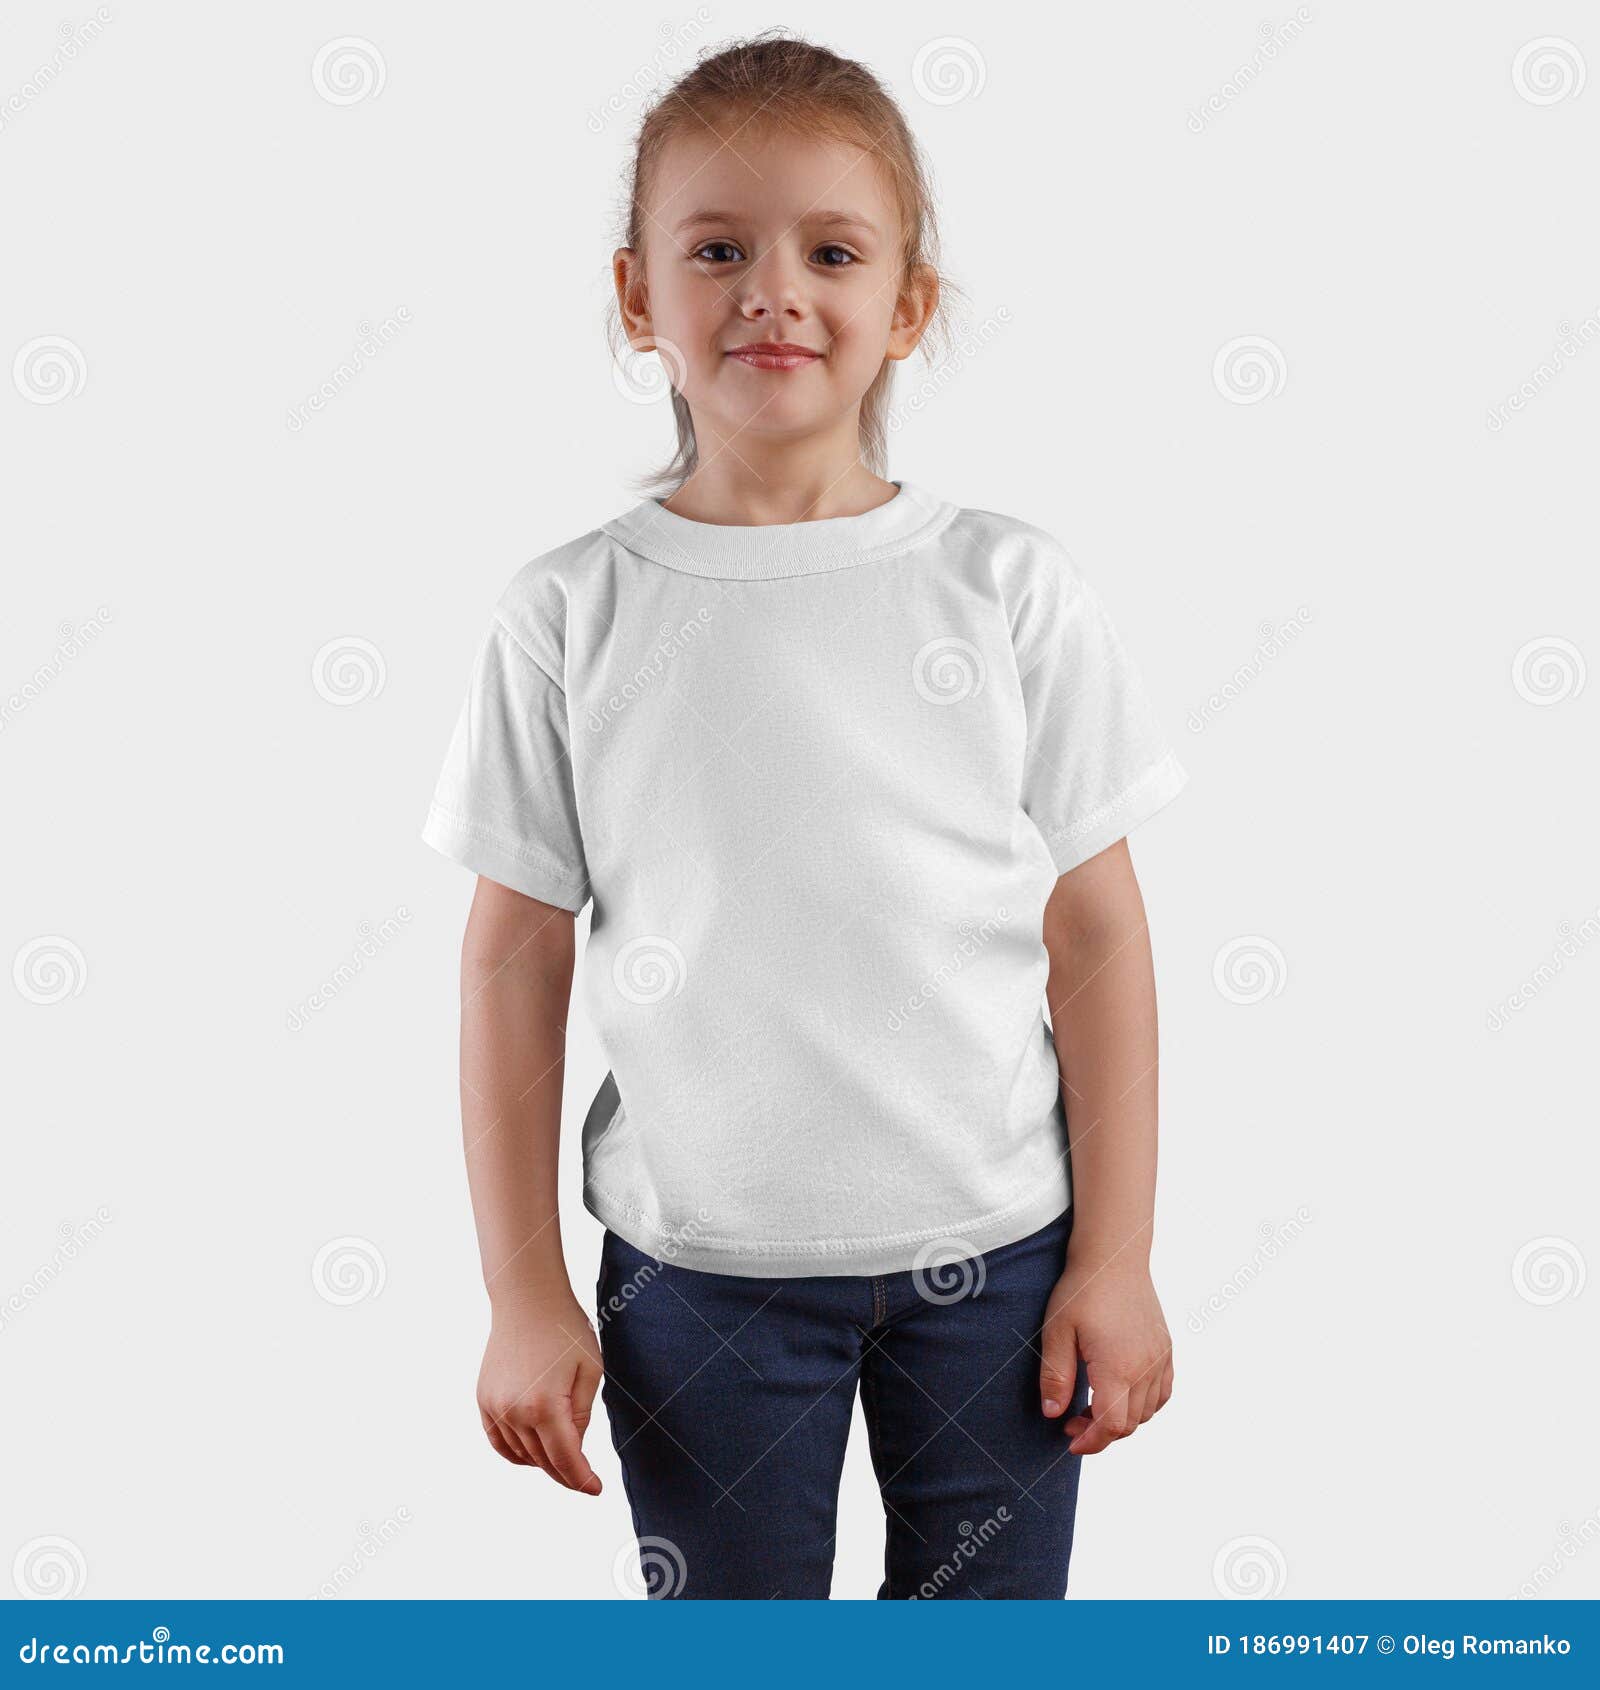 pijnlijk barricade Ruilhandel Sjabloon Voor Kinderen Blanco Kleding Voor Design Presentatie En Logo Een  Wit Shirt Voor Een Schattig Kind Voor Reclame Stock Afbeelding - Image of  glimlach, spijkerbroek: 186991407